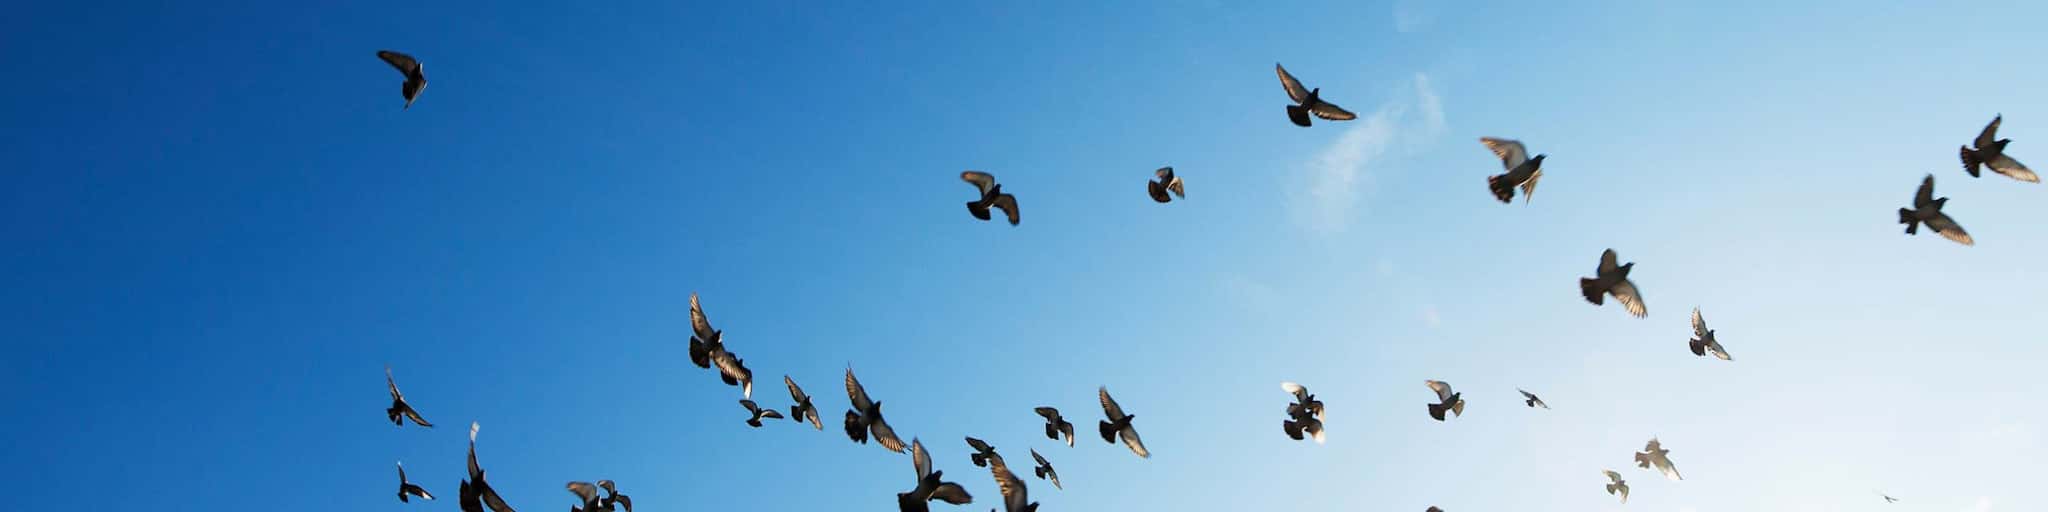 Ein Schwarm Vögel fliegt vor einem blauen Himmel vorbei.